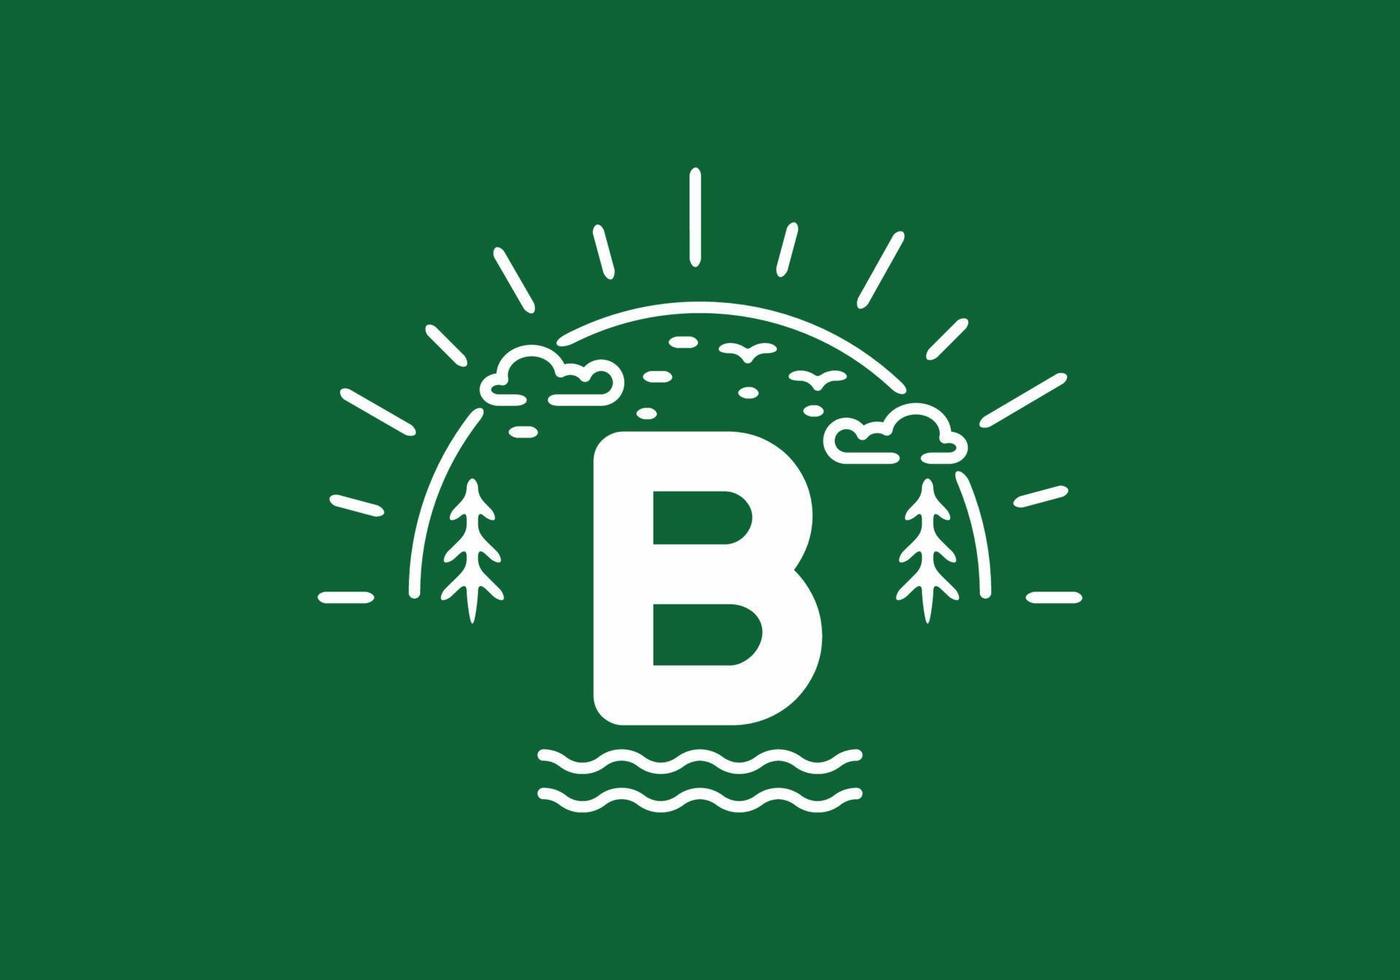 vit grön vild natur märke med b initial bokstav vektor